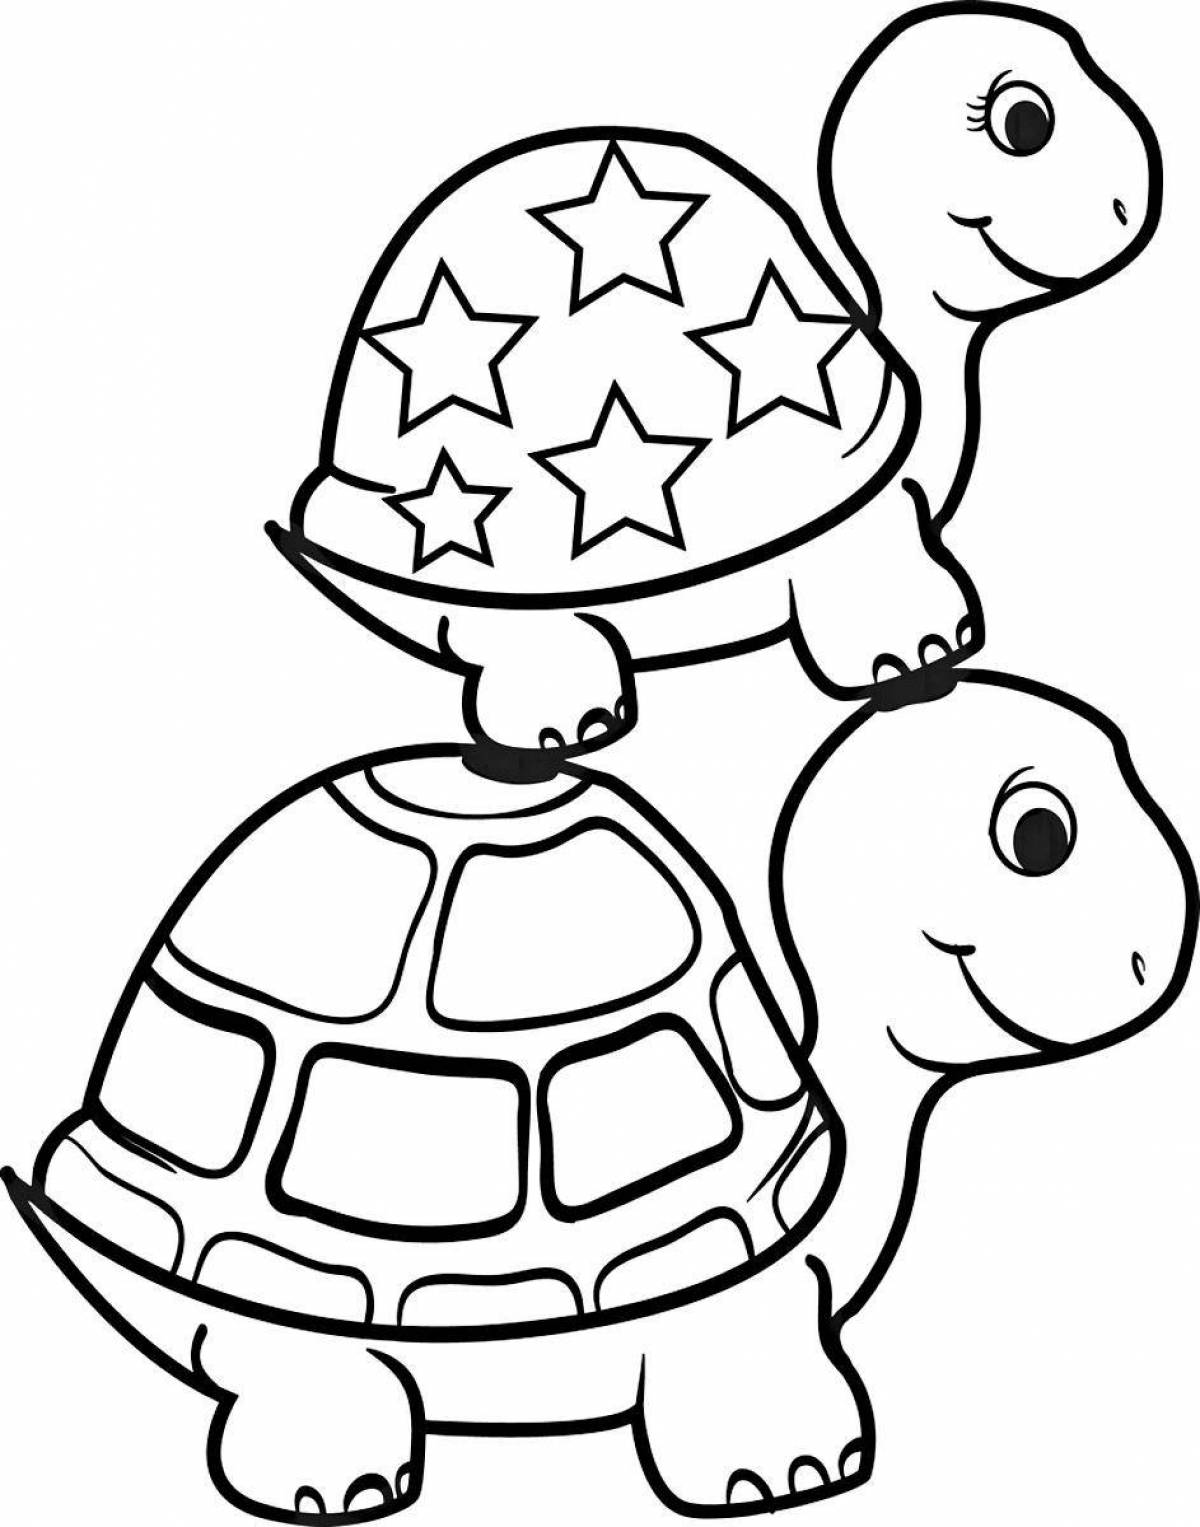 Сказочная черепаха-раскраска для детей